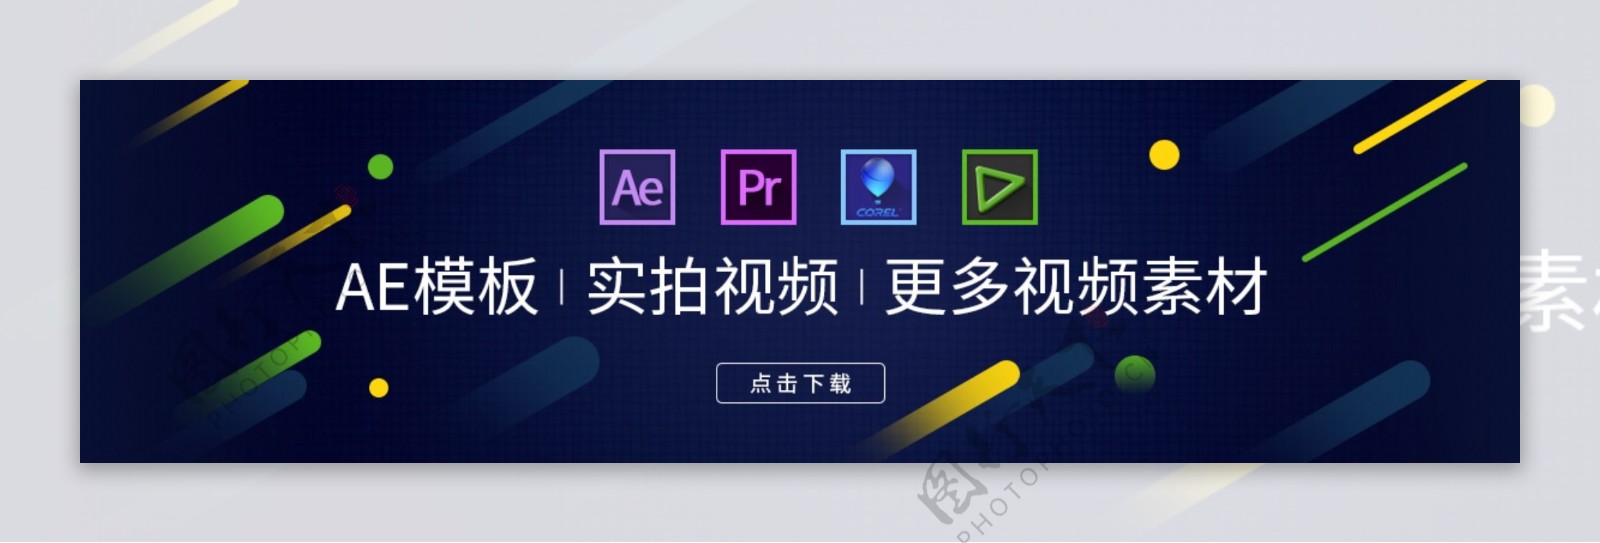 扁平化软件banner